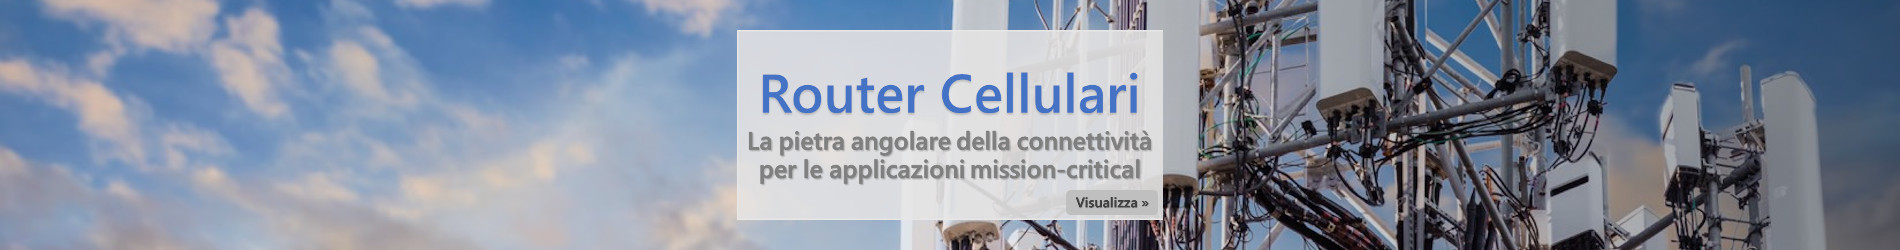 Router Cellulari